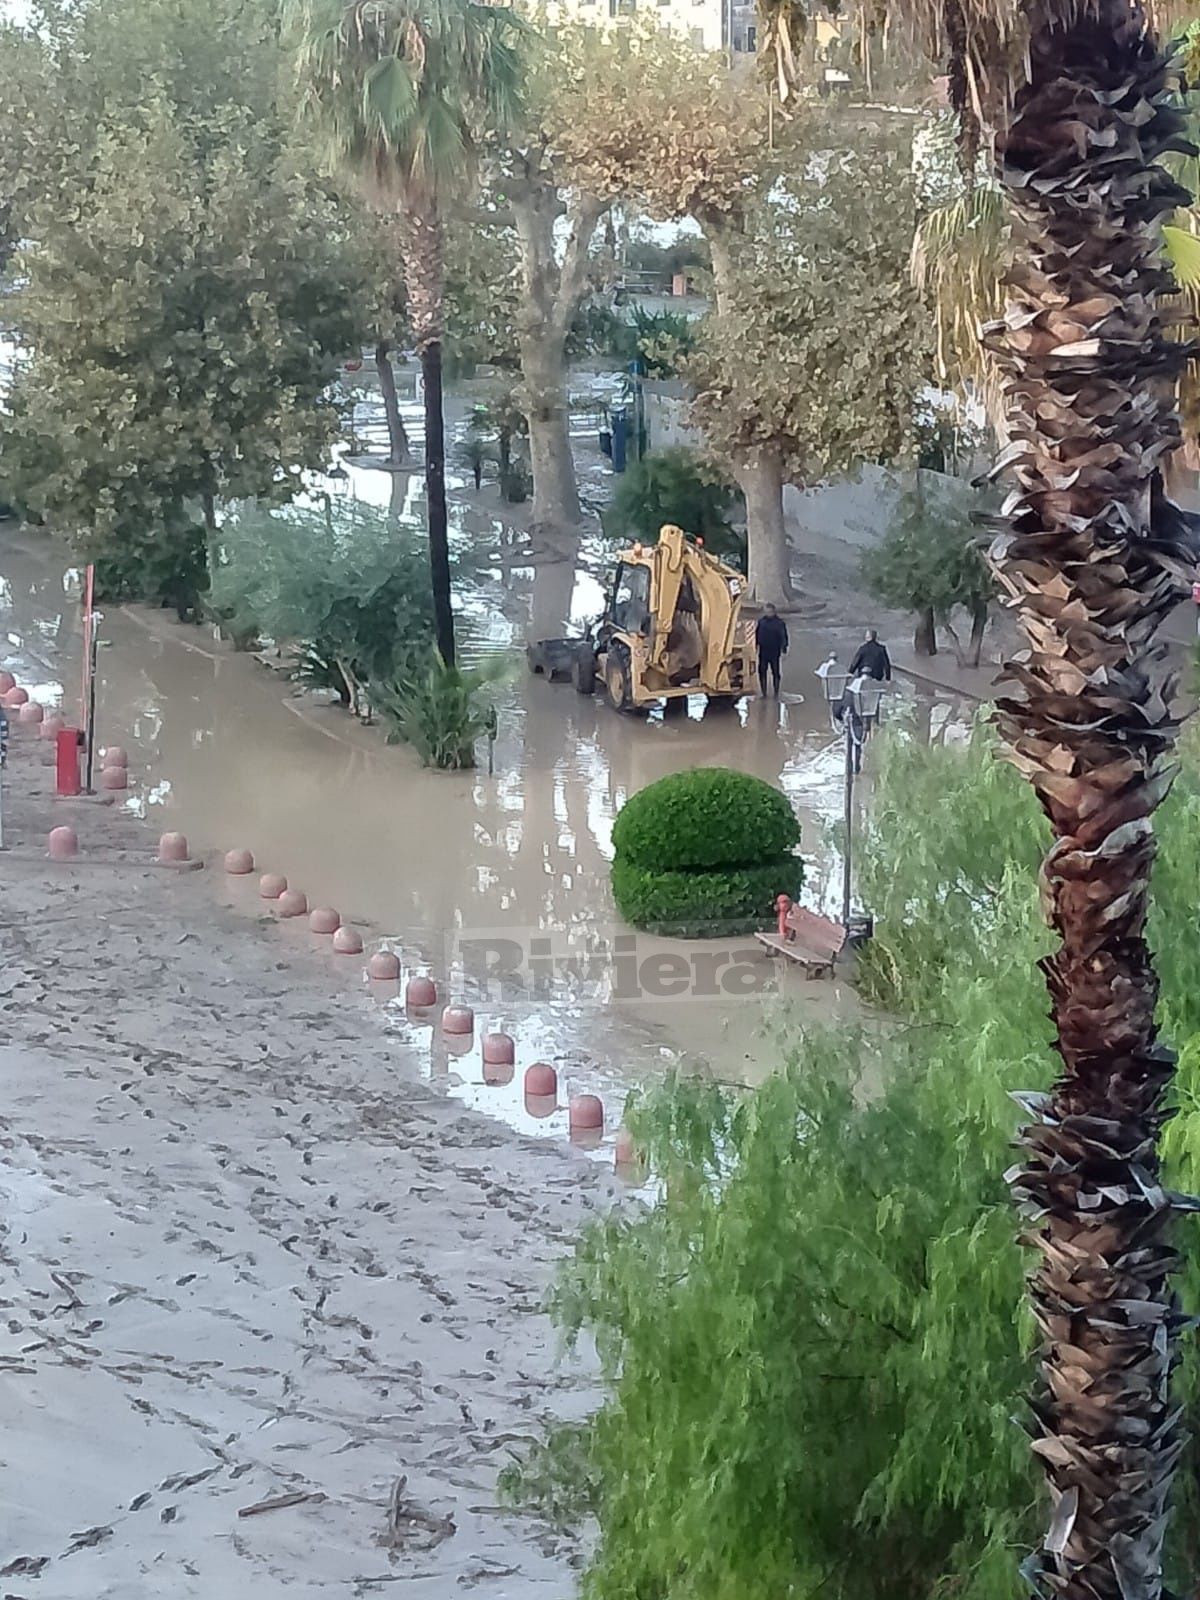 1 Alluvione Ventimiglia il giorno dopo esondazione fiume Roya maltempo 2-3 ottobre 2020 _13